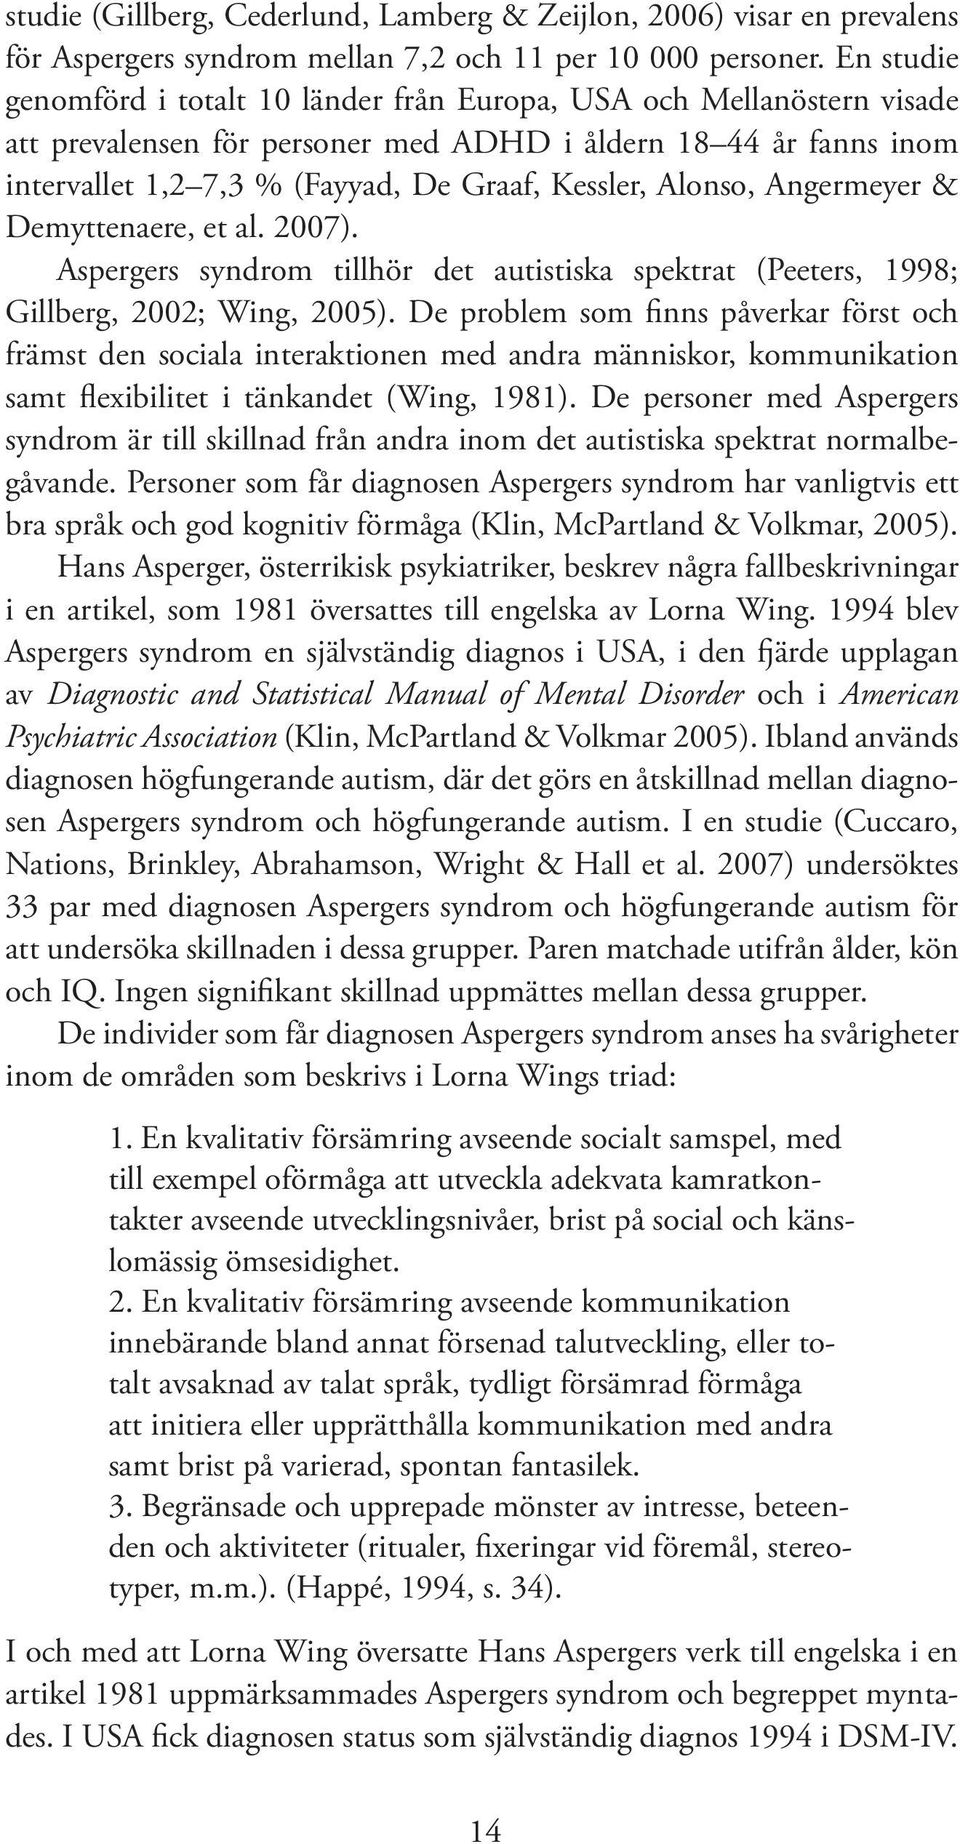 Alonso, Angermeyer & Demyttenaere, et al. 2007). Aspergers syndrom tillhör det autistiska spektrat (Peeters, 1998; Gillberg, 2002; Wing, 2005).